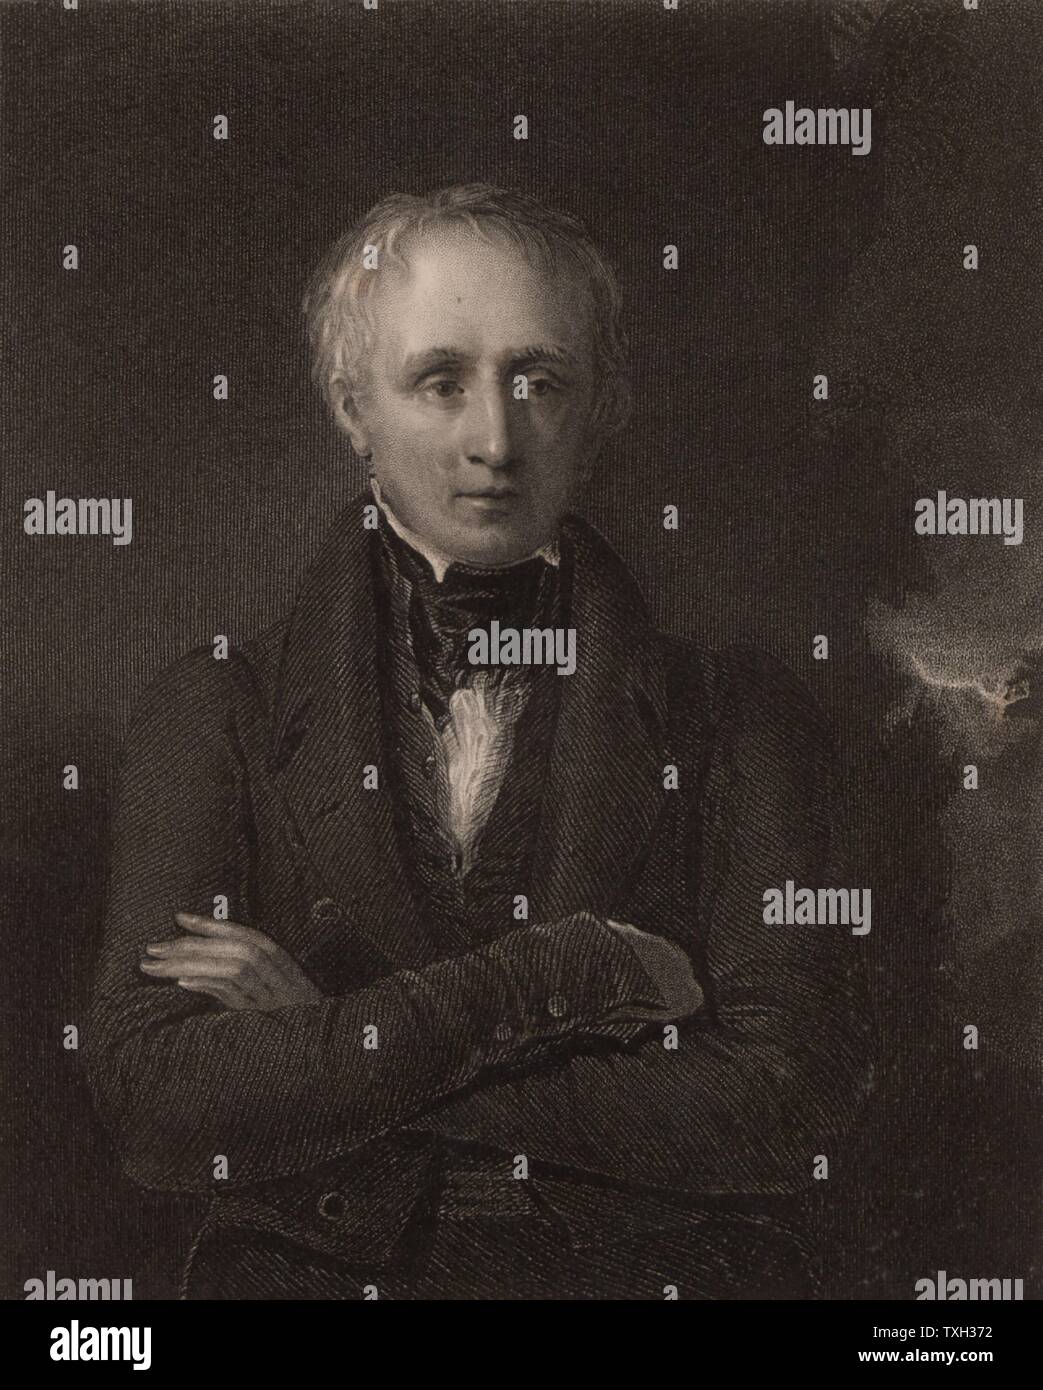 William Wordsworth (1770-1850), poeta inglés nacido en Cockermouth, Cumbria. Logrado Robert Southey como poeta laureado en 1843. Grabado de 'National Portrait Gallery' (Londres, 1833). Foto de stock